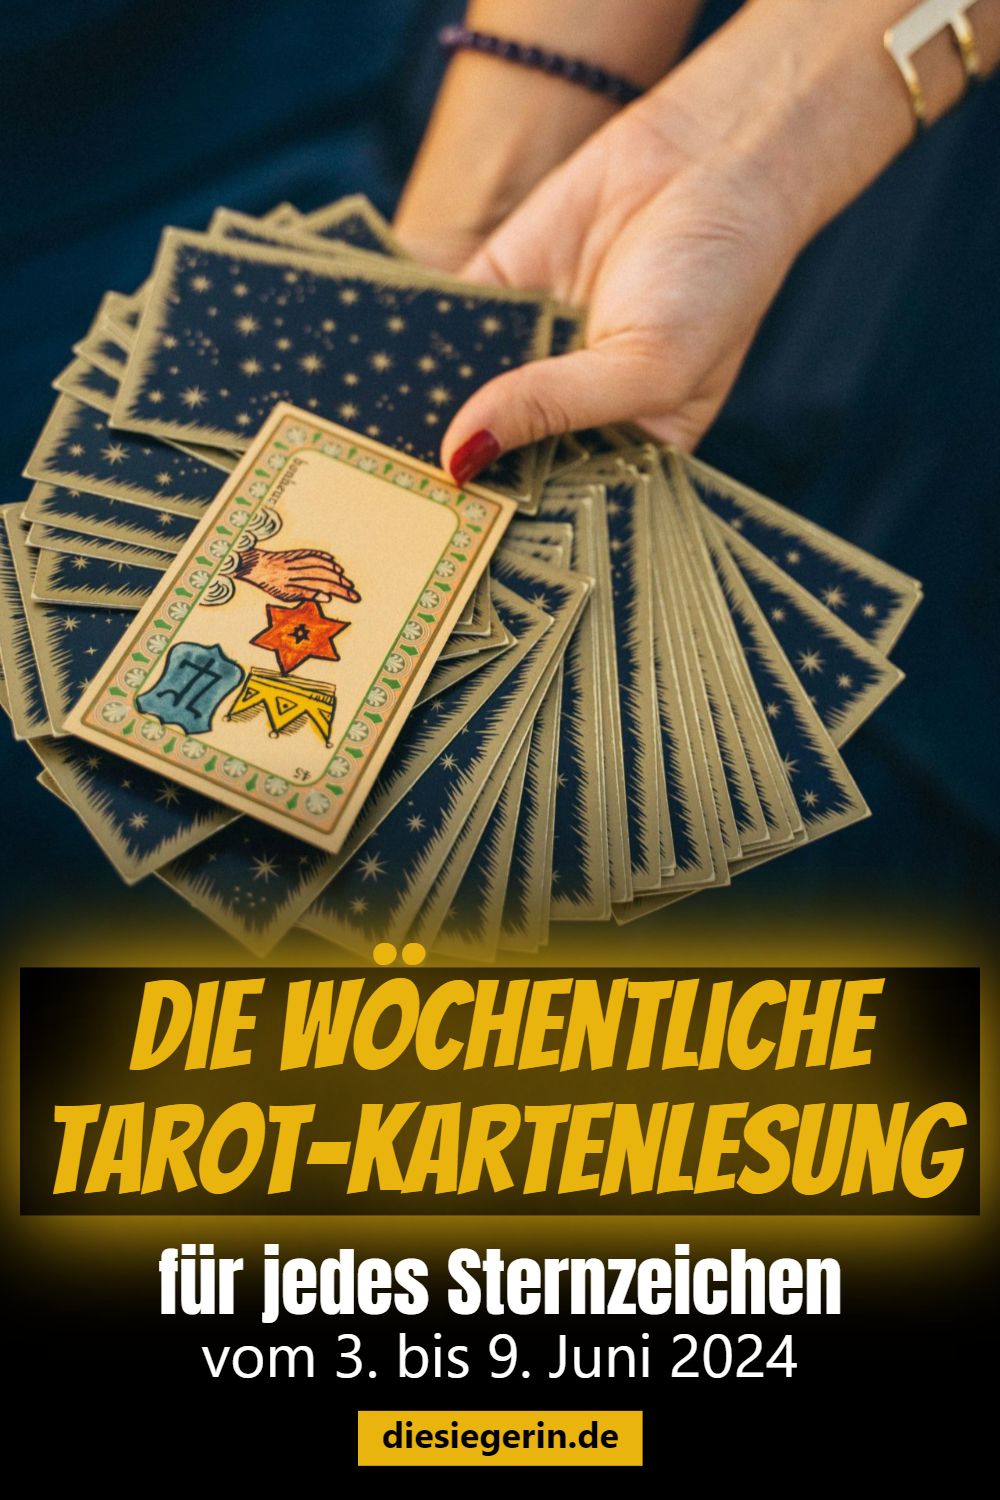 Die wöchentliche Tarot-Kartenlesung für jedes Sternzeichen vom 3. bis 9. Juni 2024